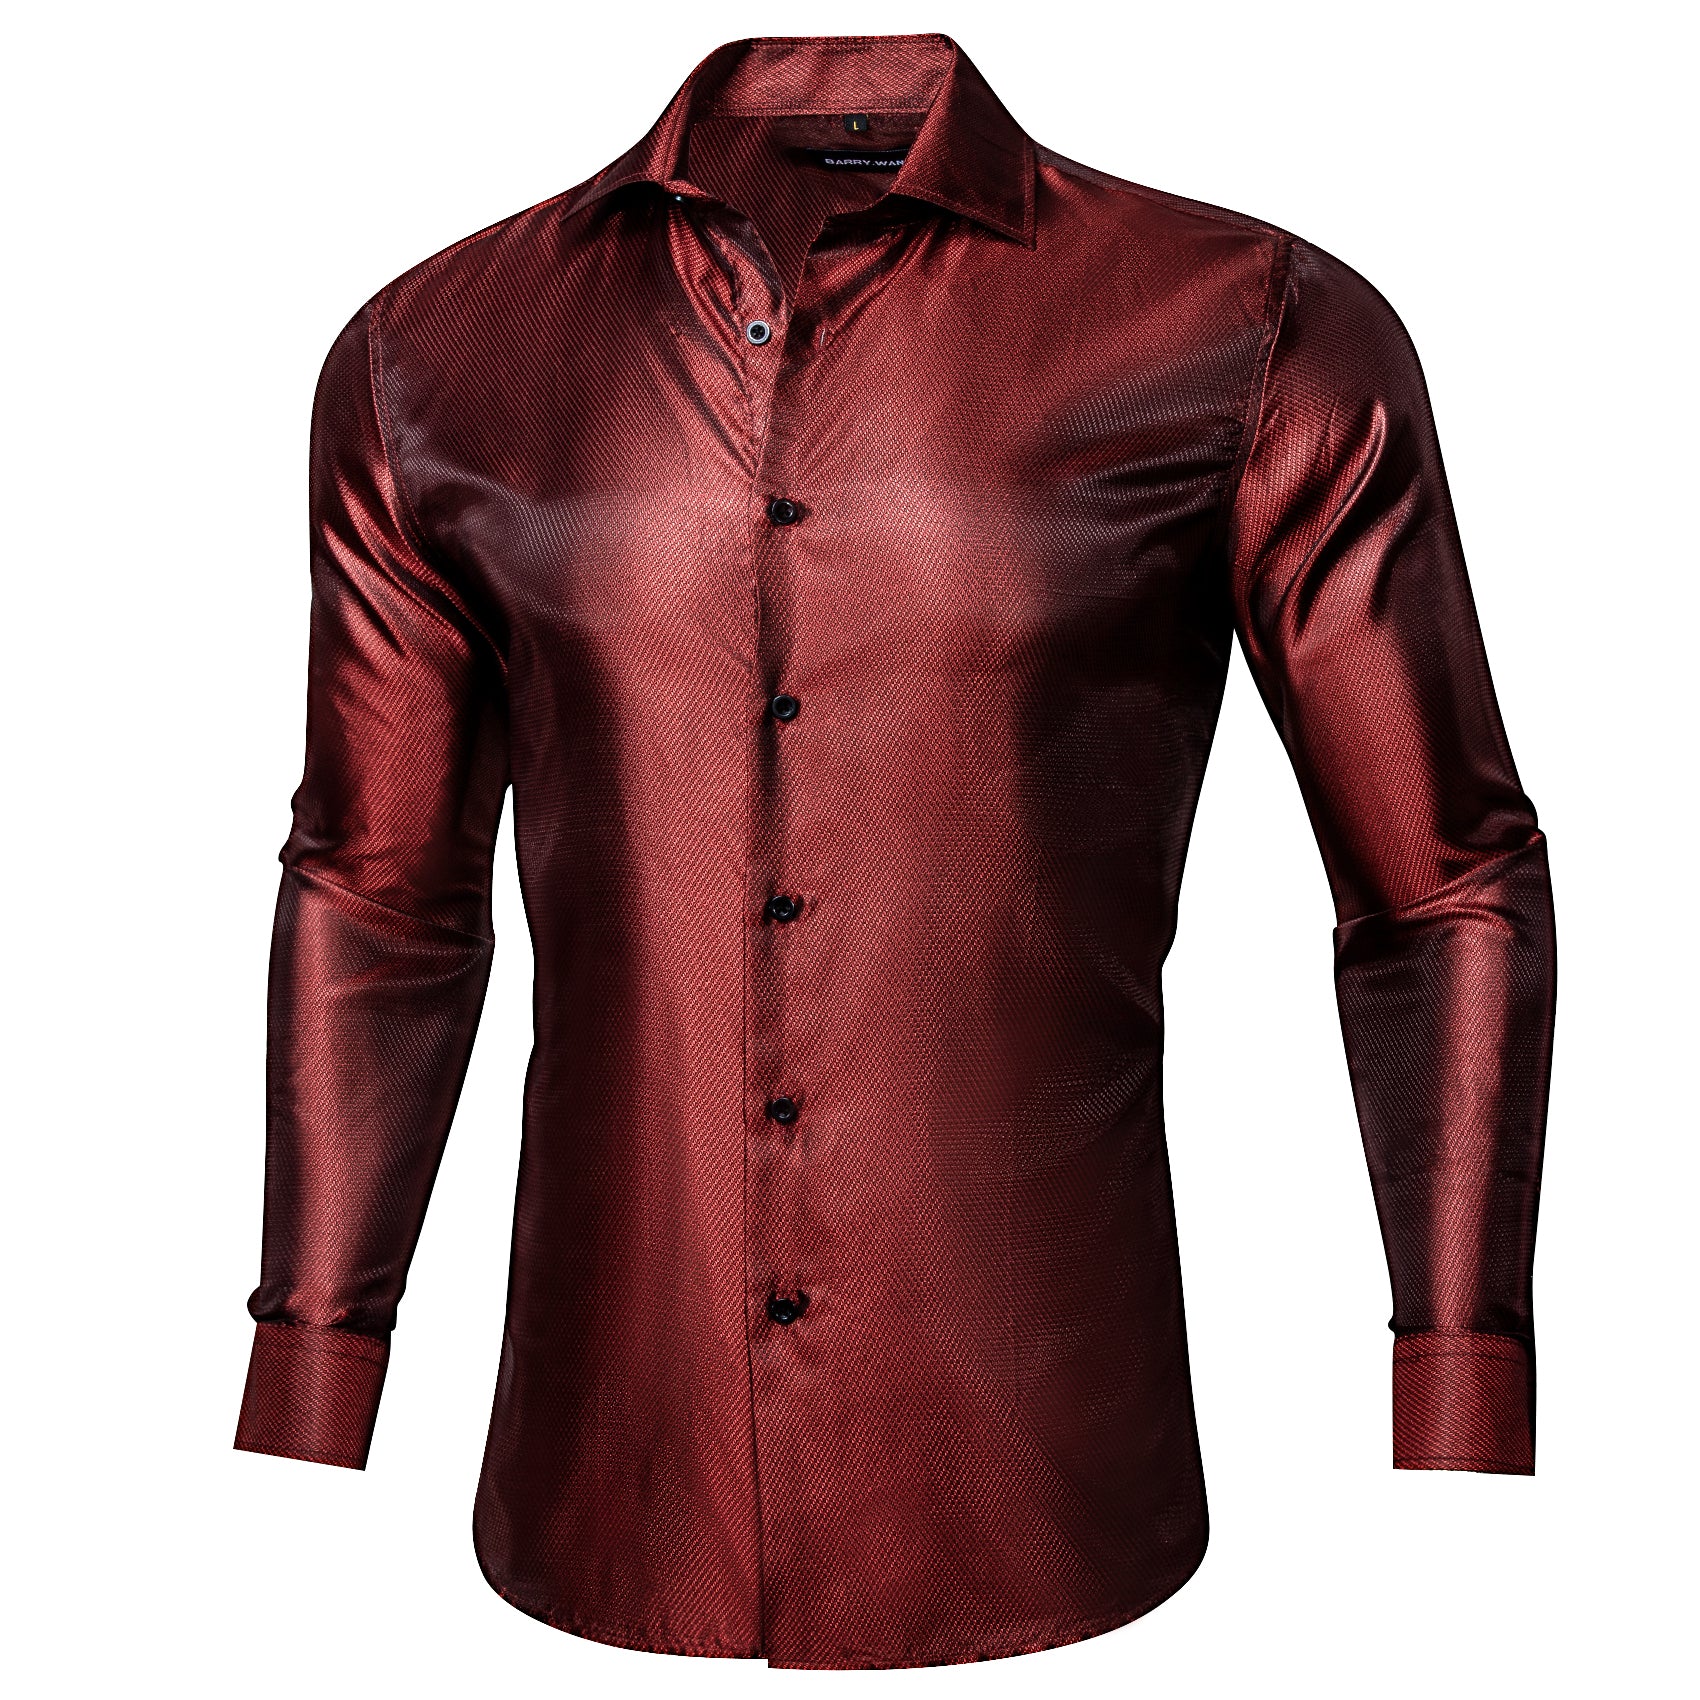 Barry.wang Button Down Shirt Rust Red Solid Silk Long Sleeve Shirt